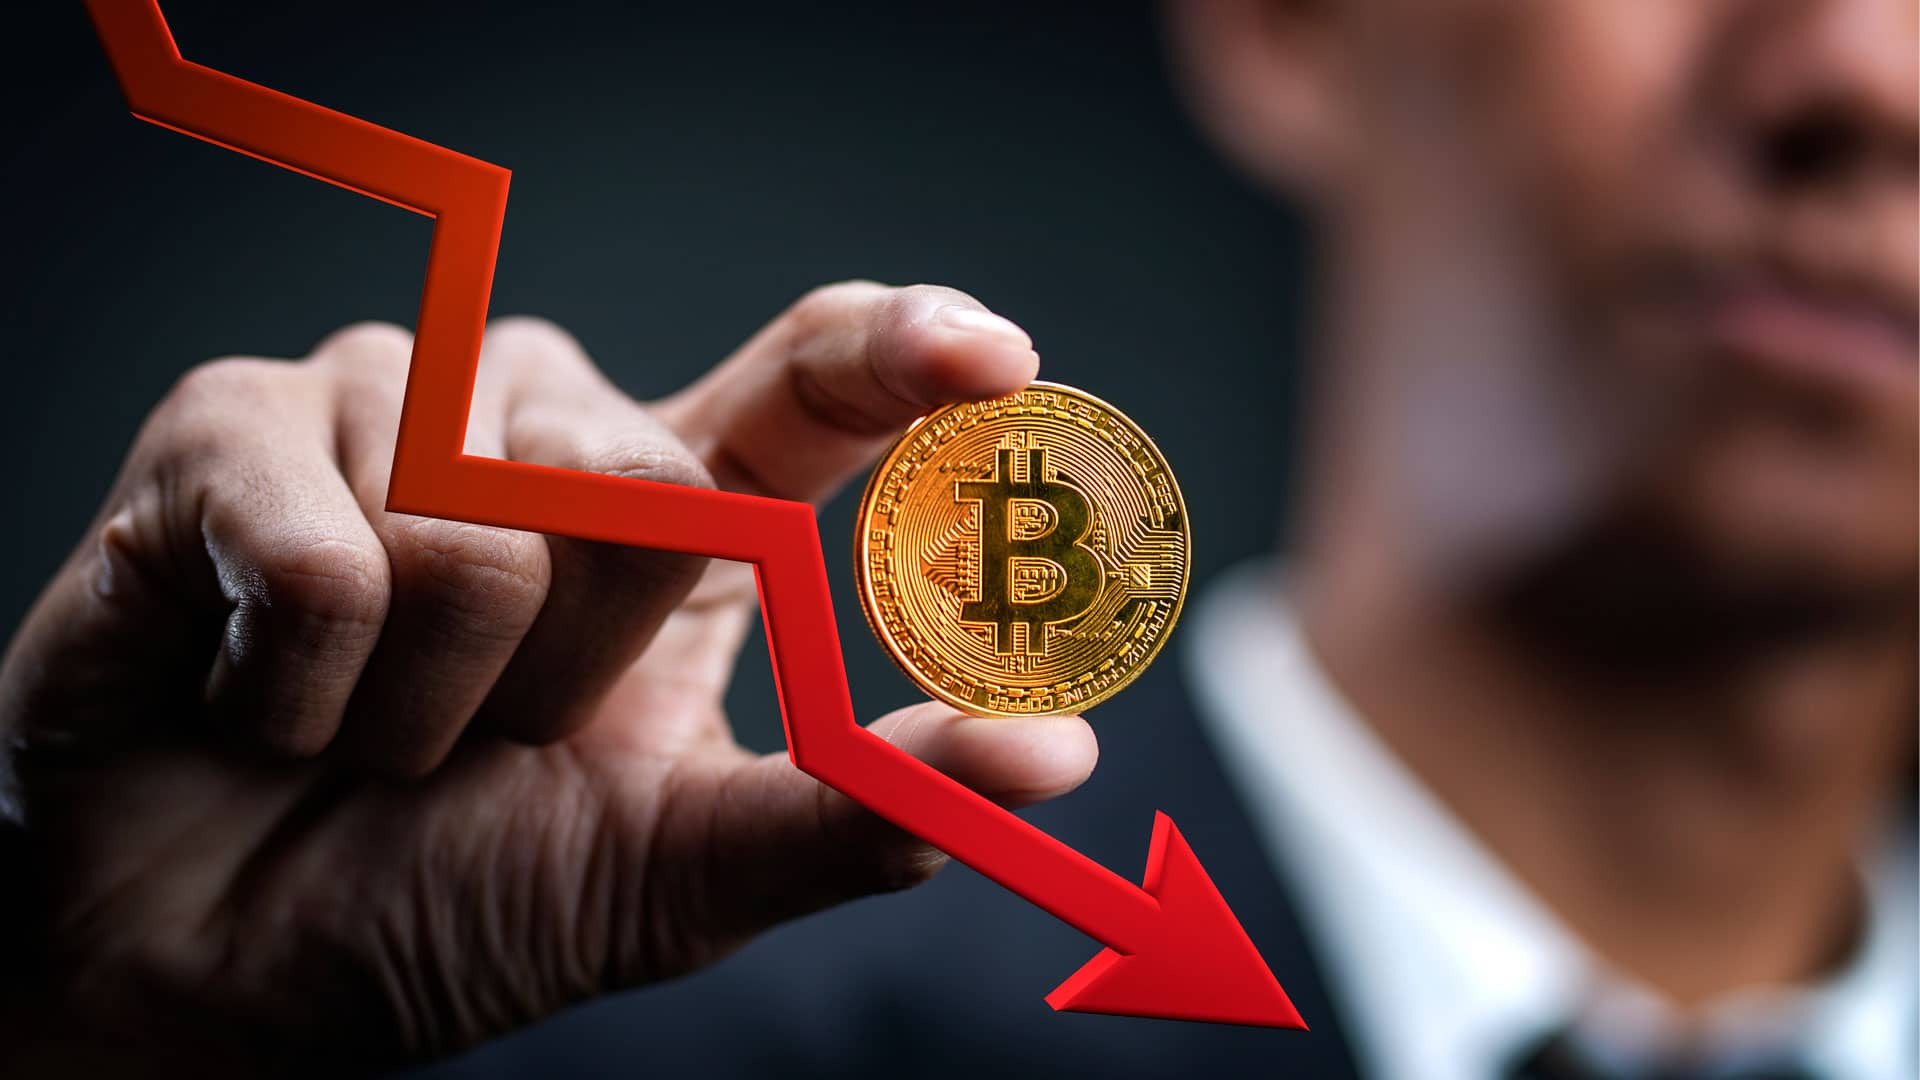 “Venda bitcoin enquanto pode”, diz homem que previu crise de 2008